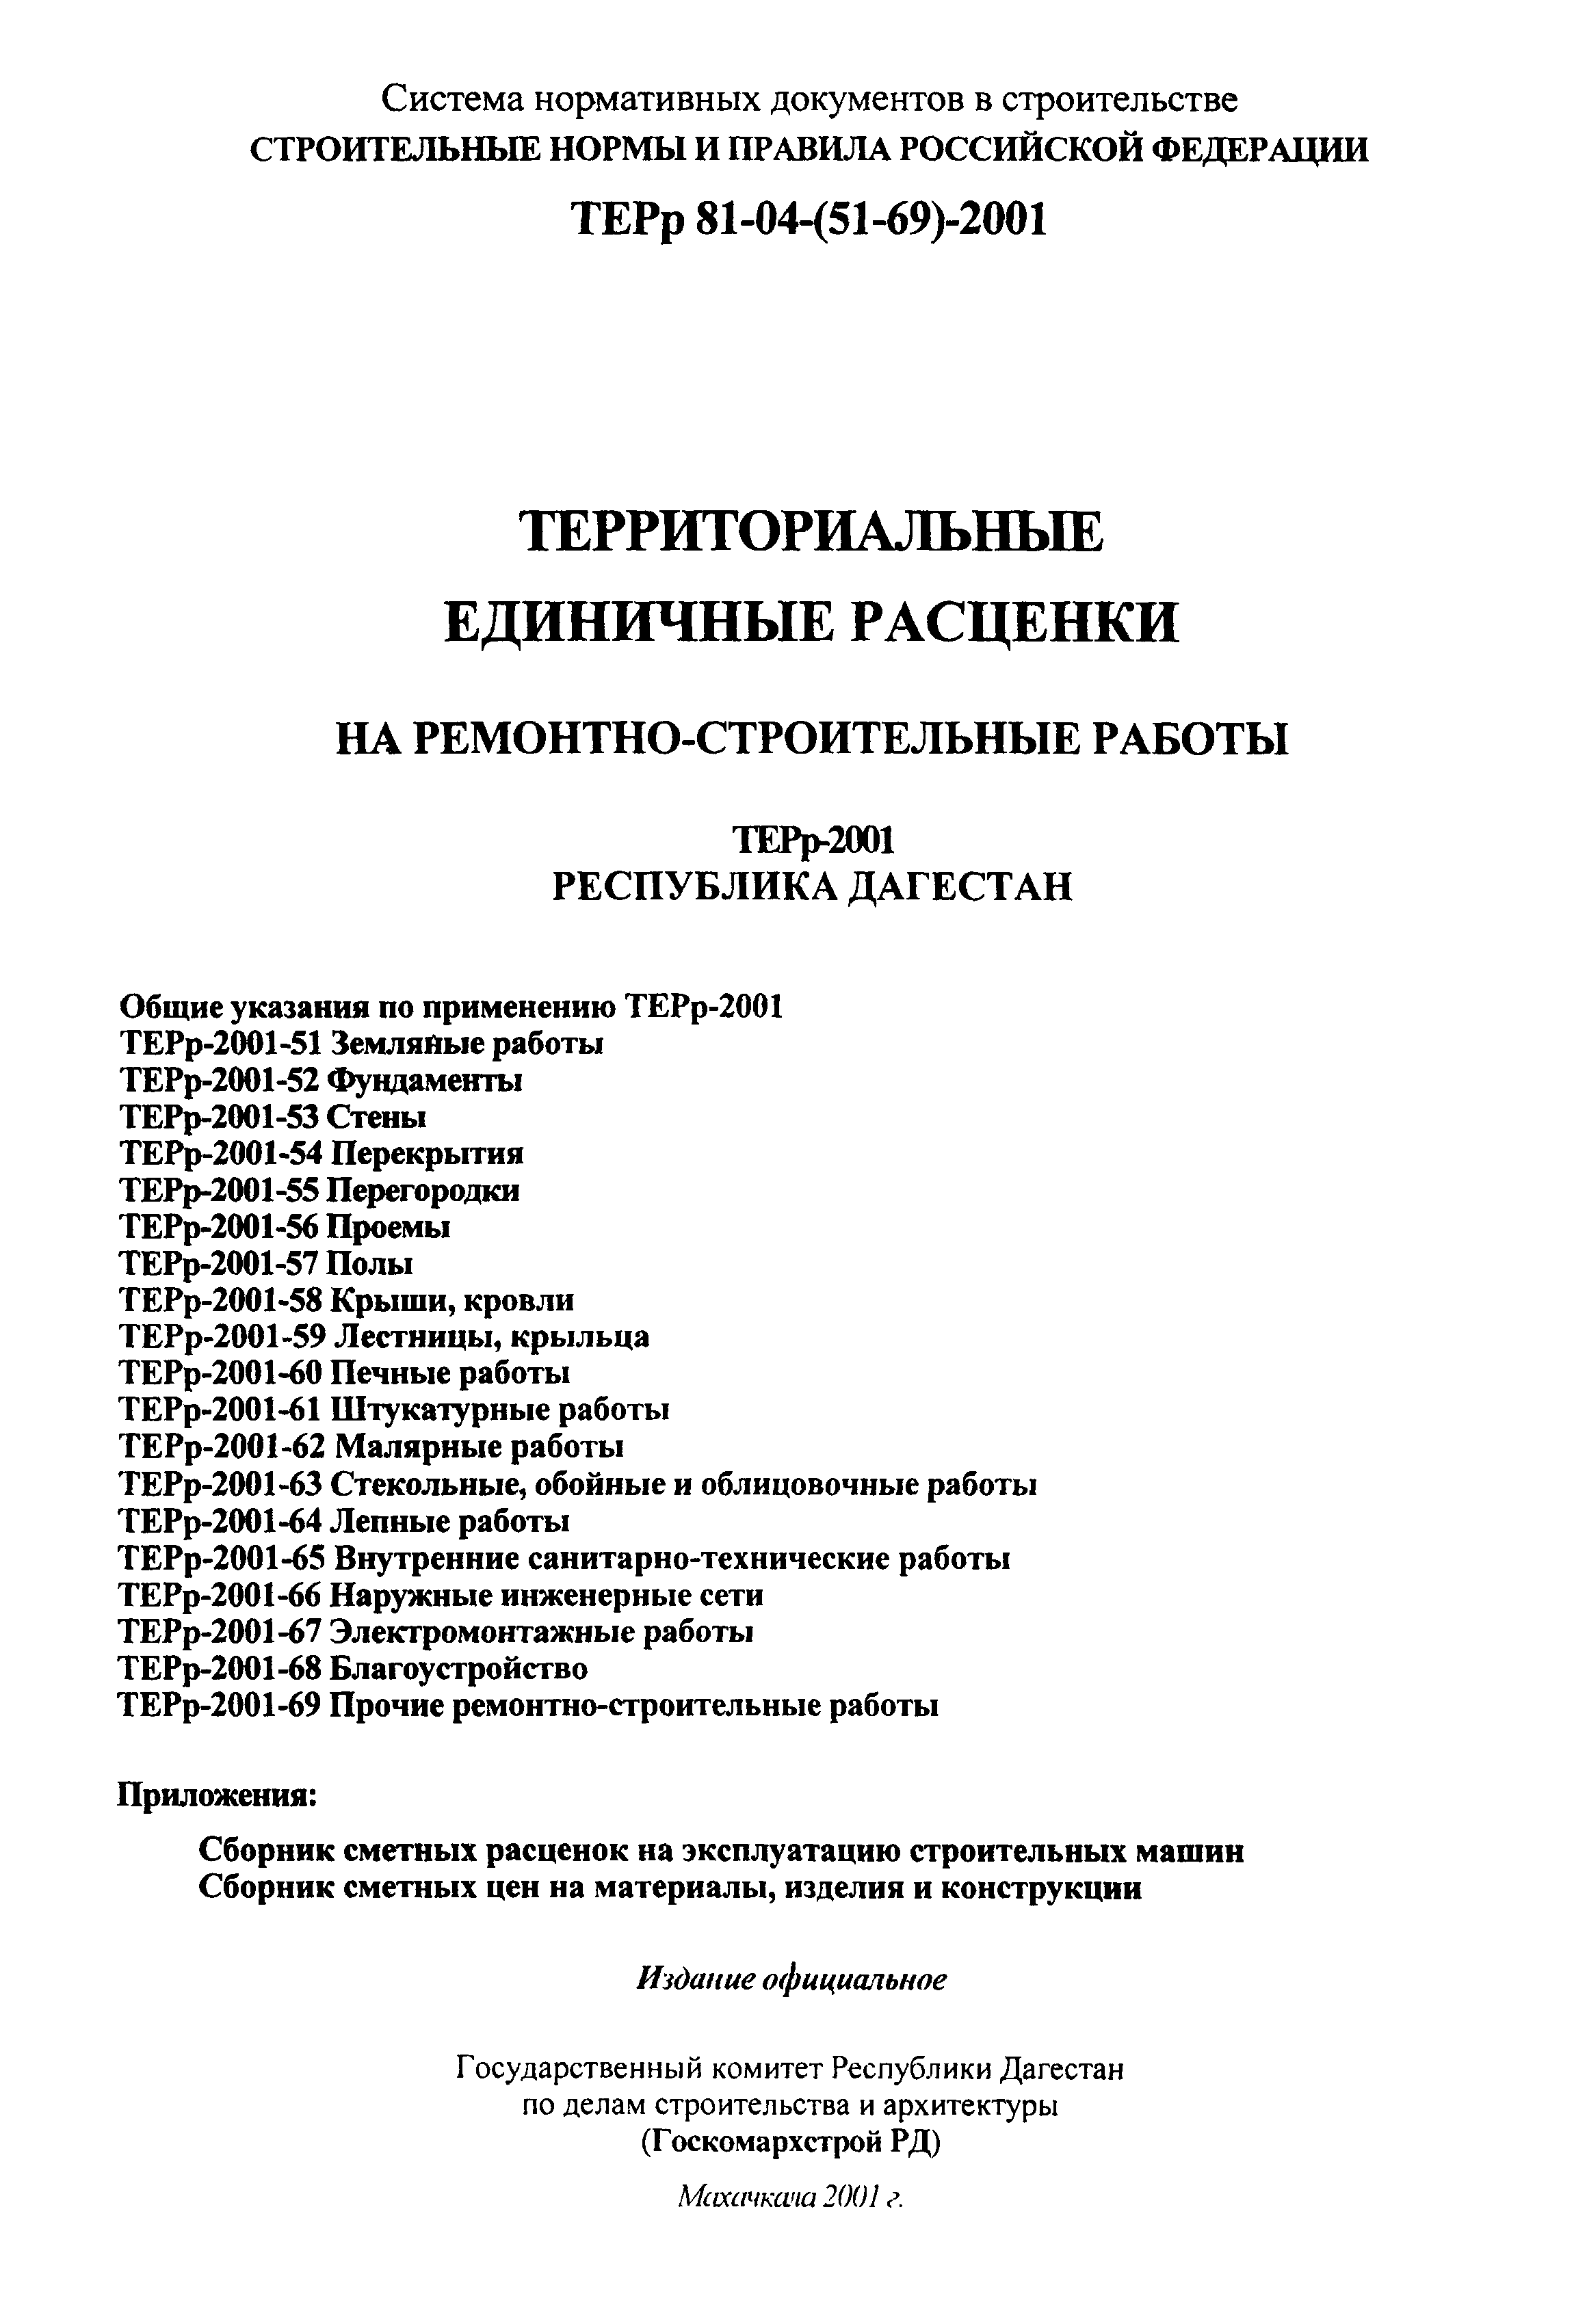 ТЕРр Республика Дагестан 2001-63